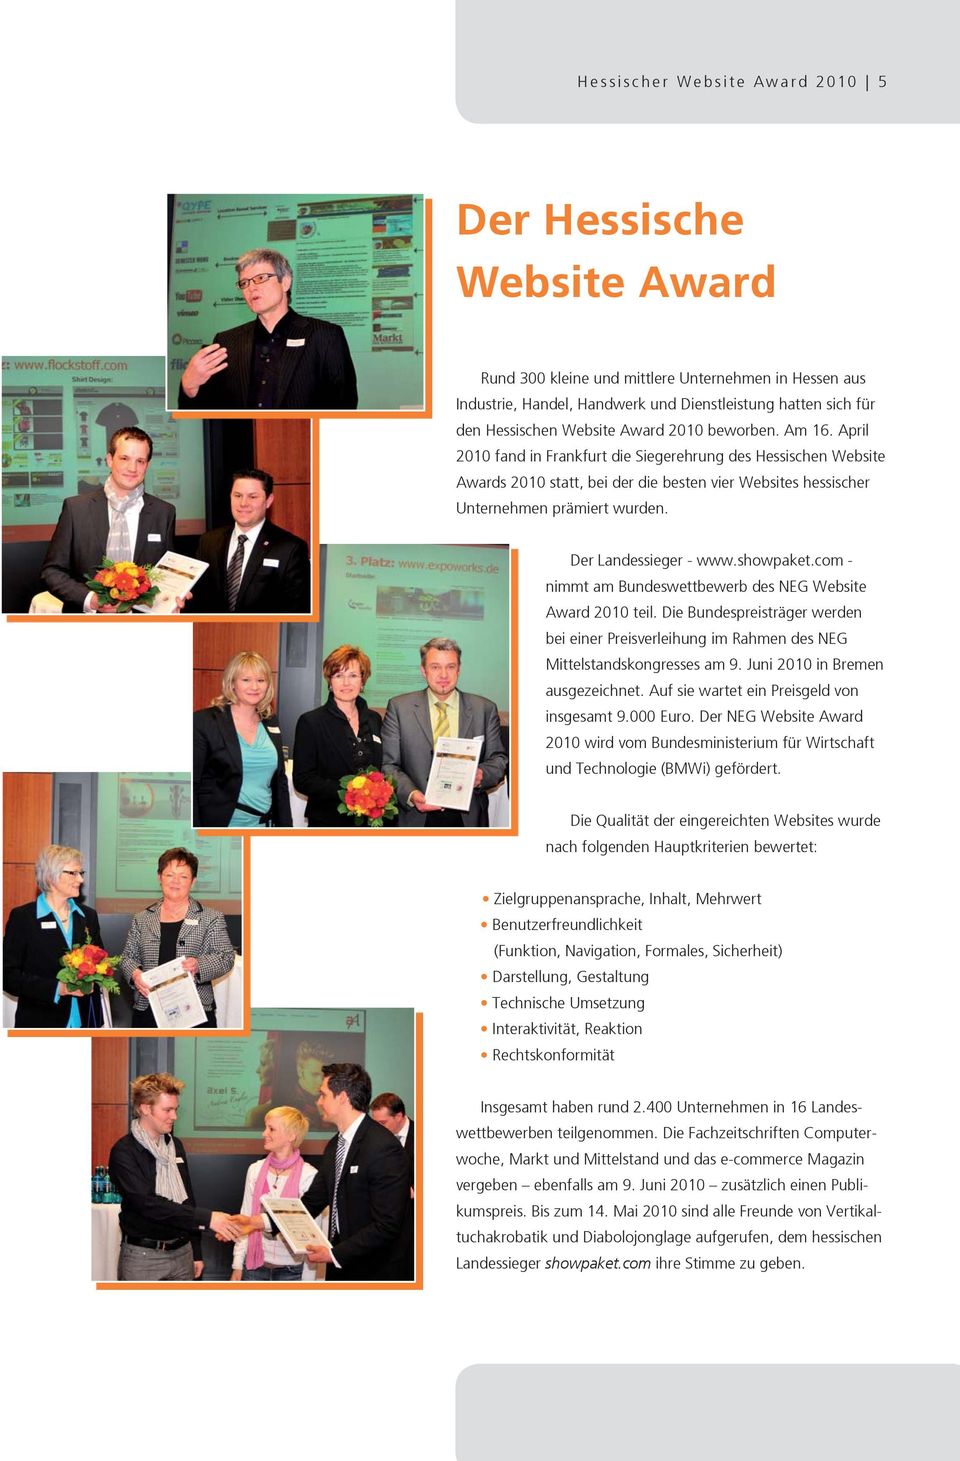 Der Landessieger - www.showpaket.com - nimmt am Bundeswettbewerb des NEG Website Award 2010 teil. Die Bundespreisträger werden bei einer Preisverleihung im Rahmen des NEG Mittelstandskongresses am 9.